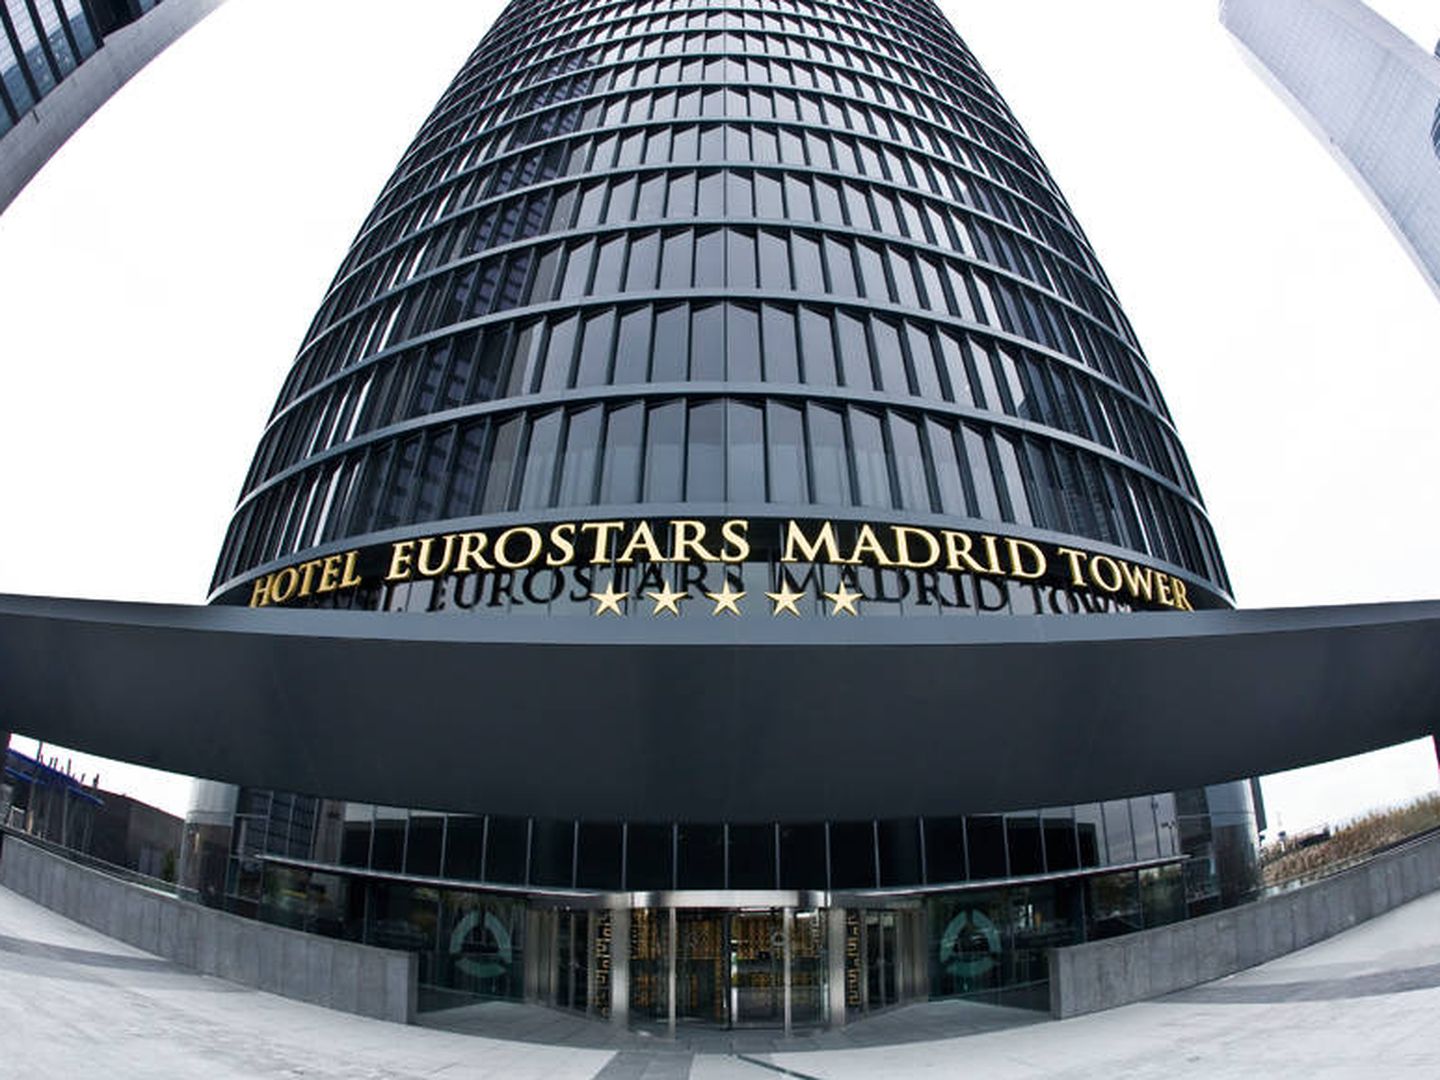 Imagen del Hotel Eurostars, propiedad de Merlin. (EFE)